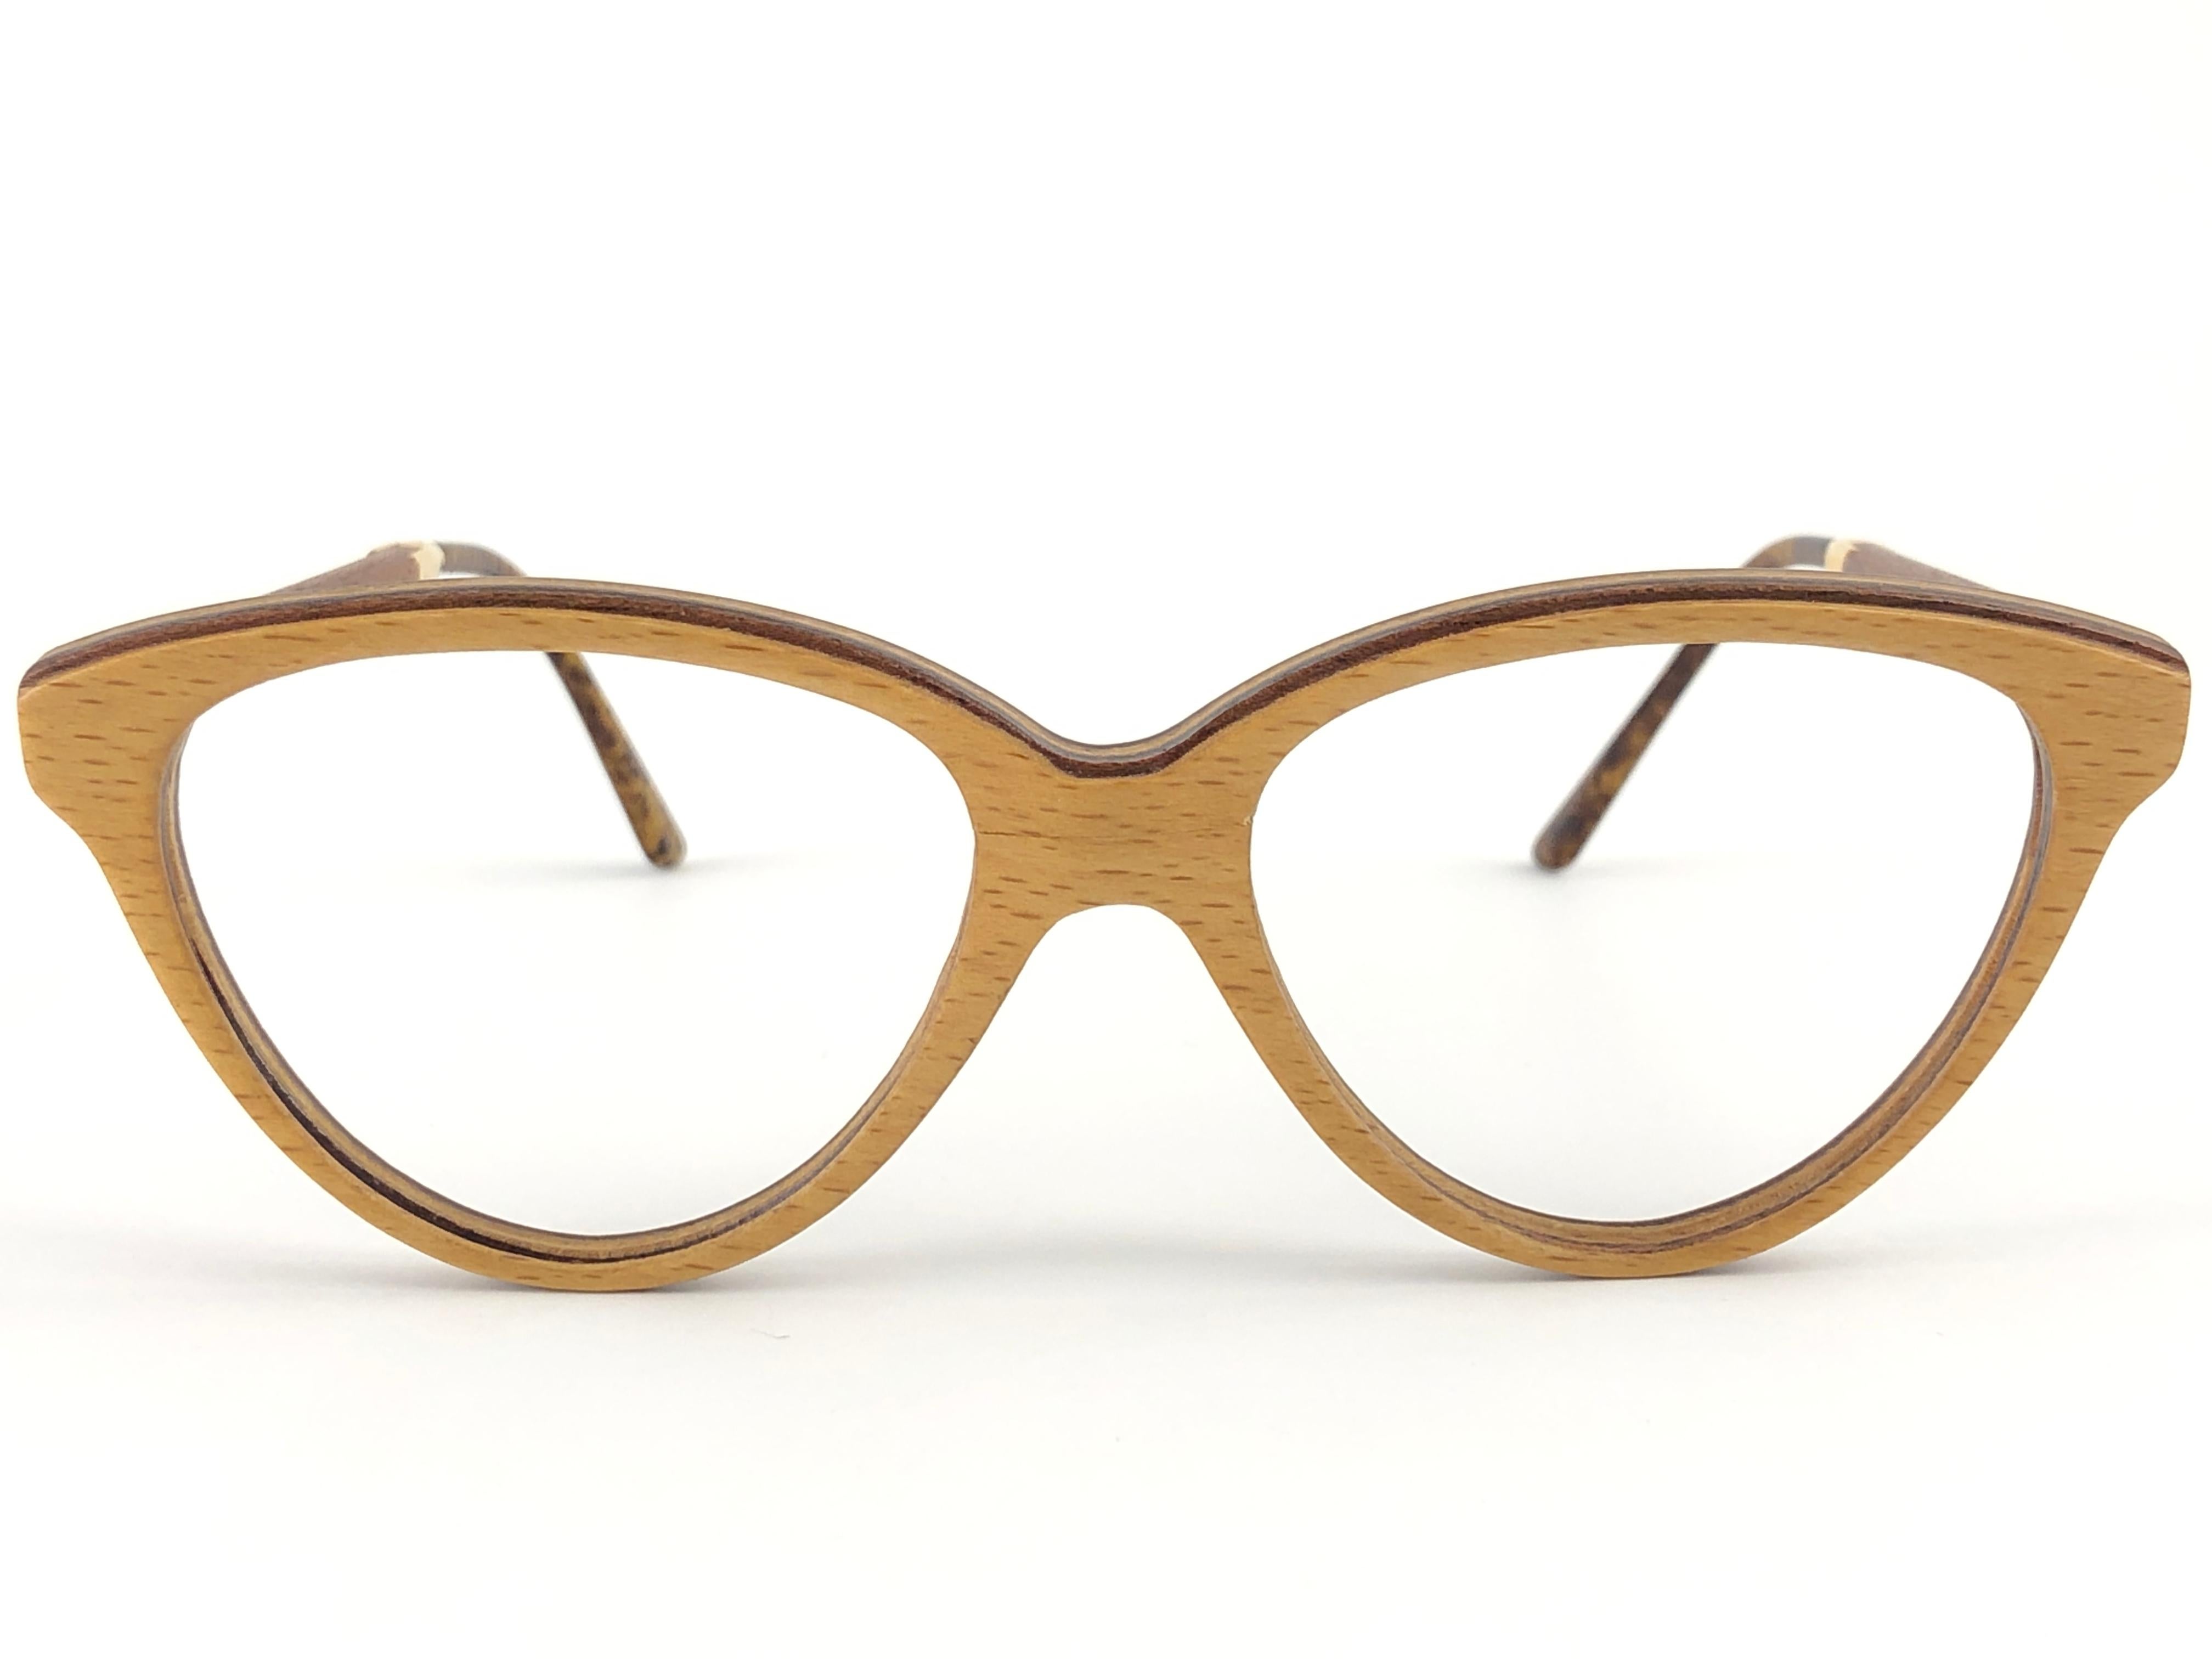 New Vintage Gold & Wood Paris cadre en bois véritable prêt à recevoir des lentilles de prescription ou de lecture.
Neuf, jamais porté ou exposé. Cette paire peut présenter des signes mineurs d'usure dus au stockage. 

Fabriqué en